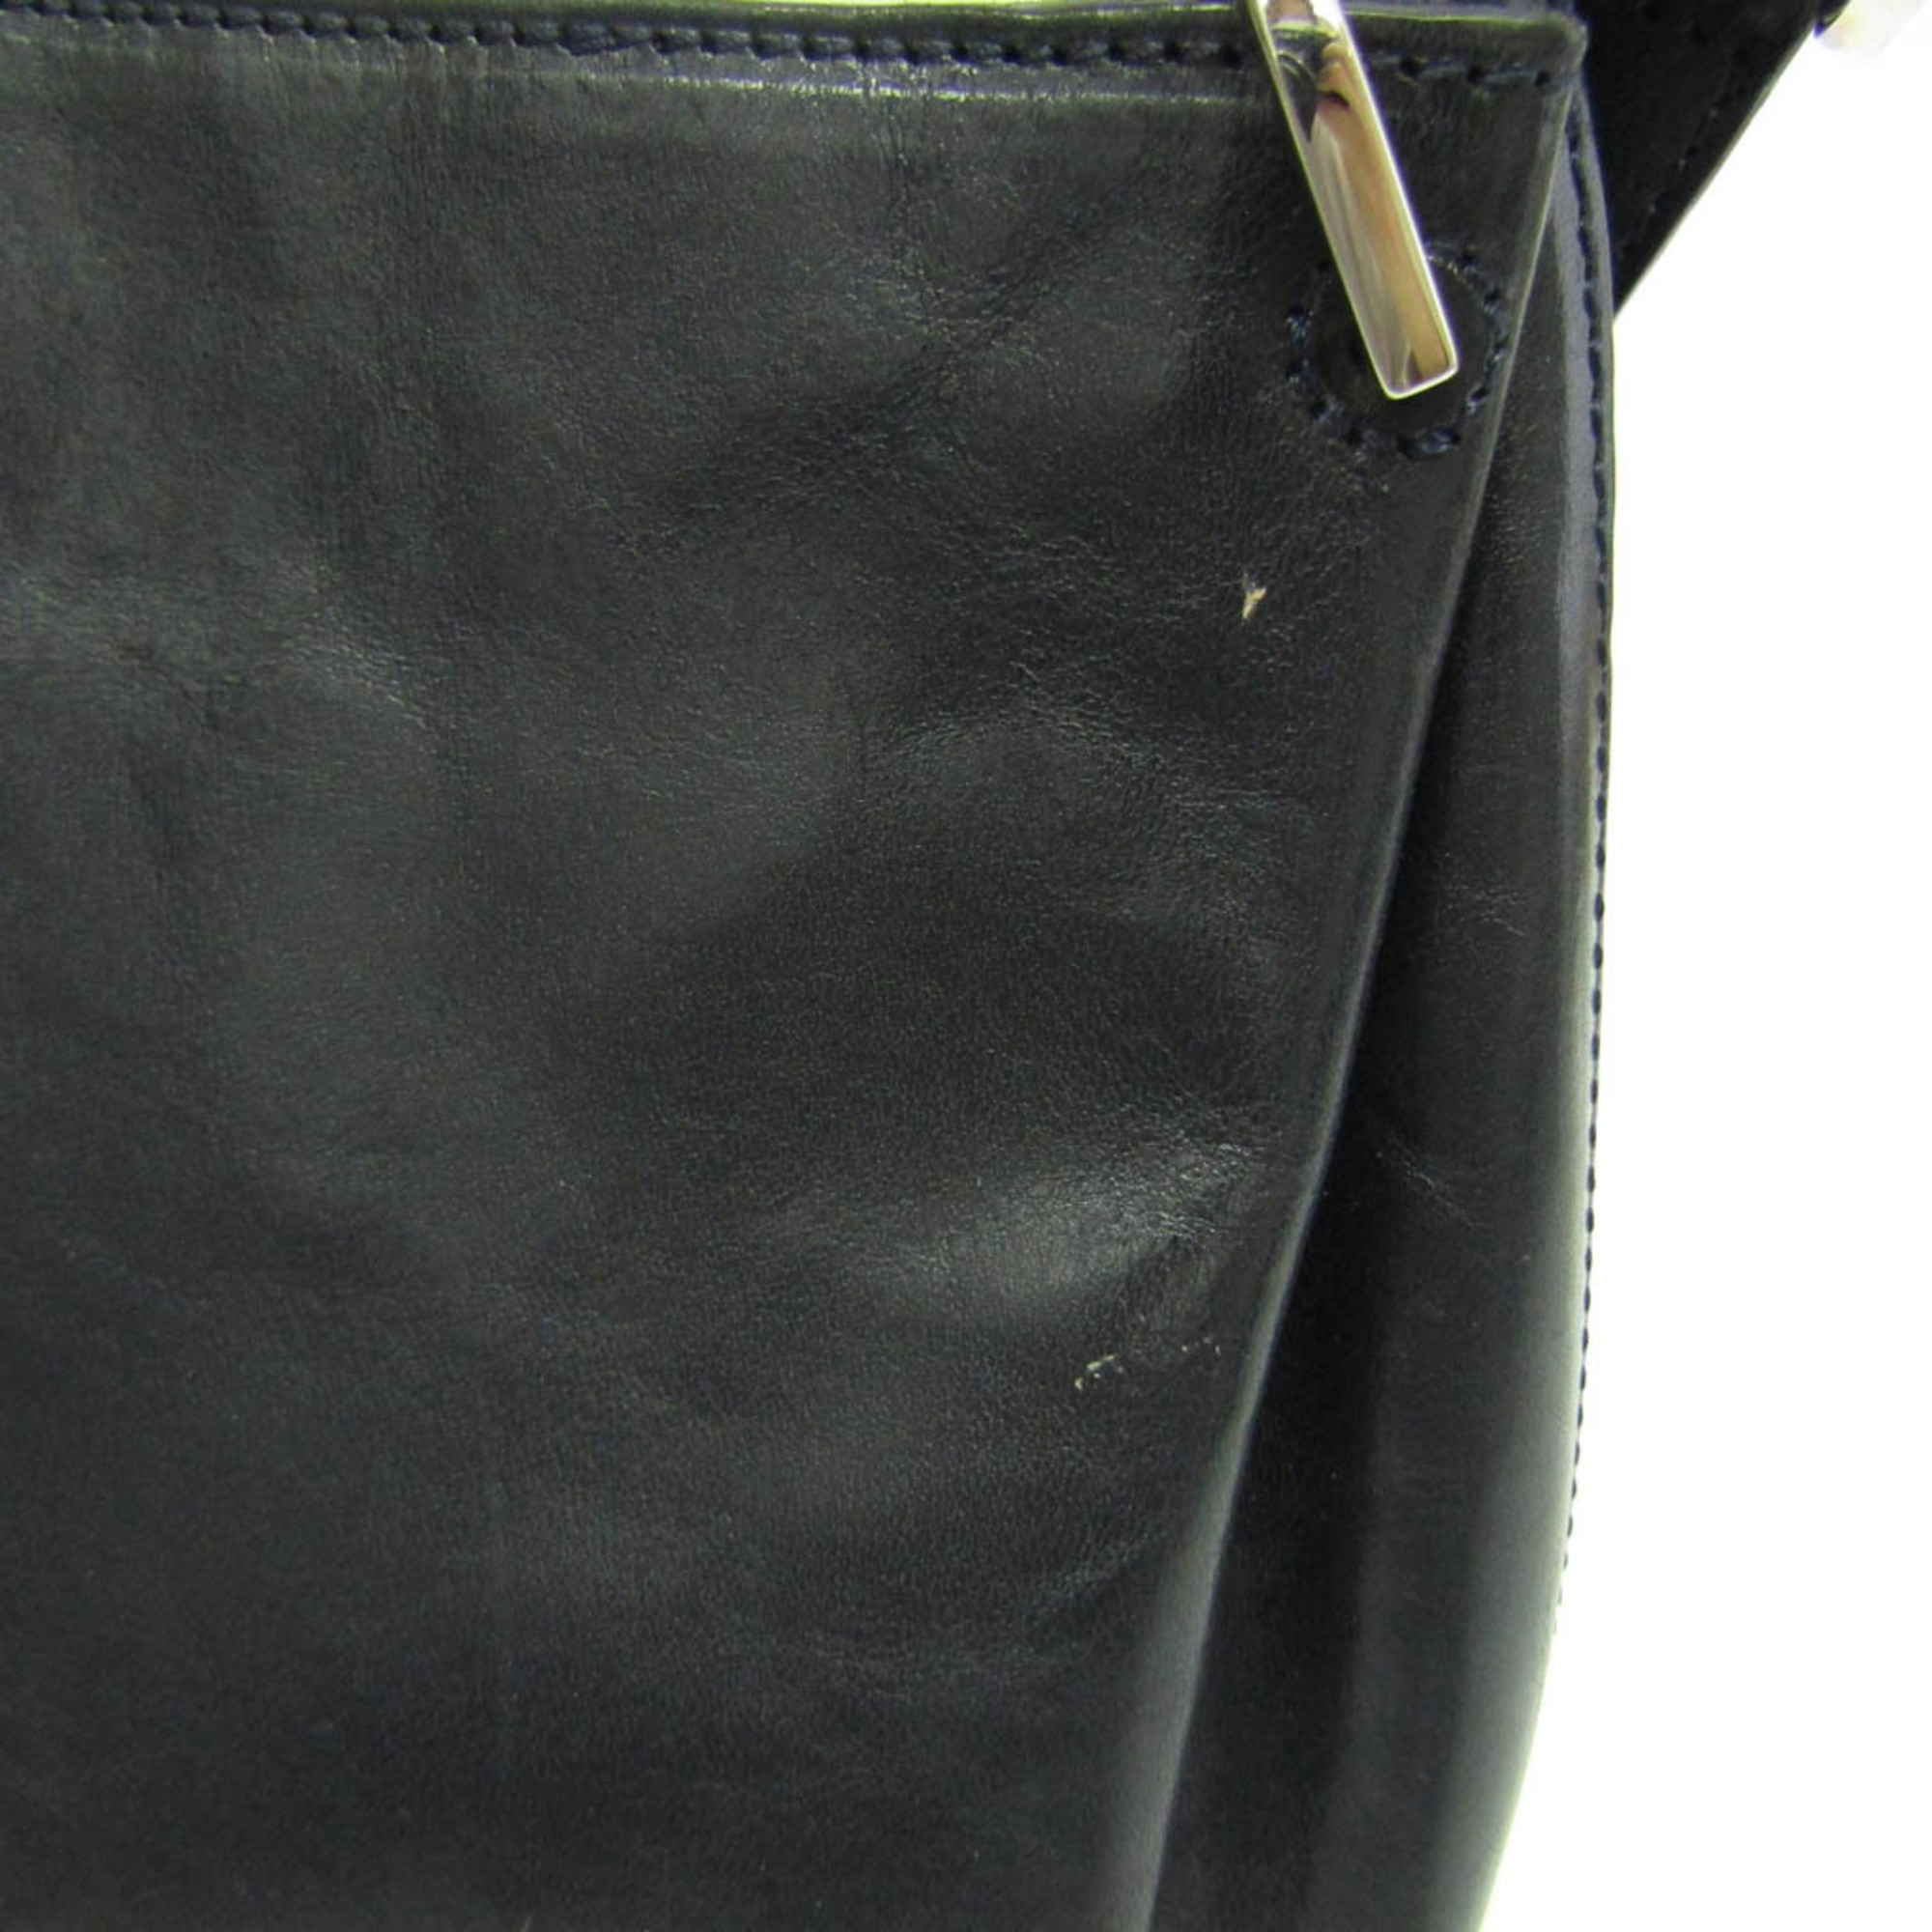 Hirofu Women's Leather Shoulder Bag Navy Black